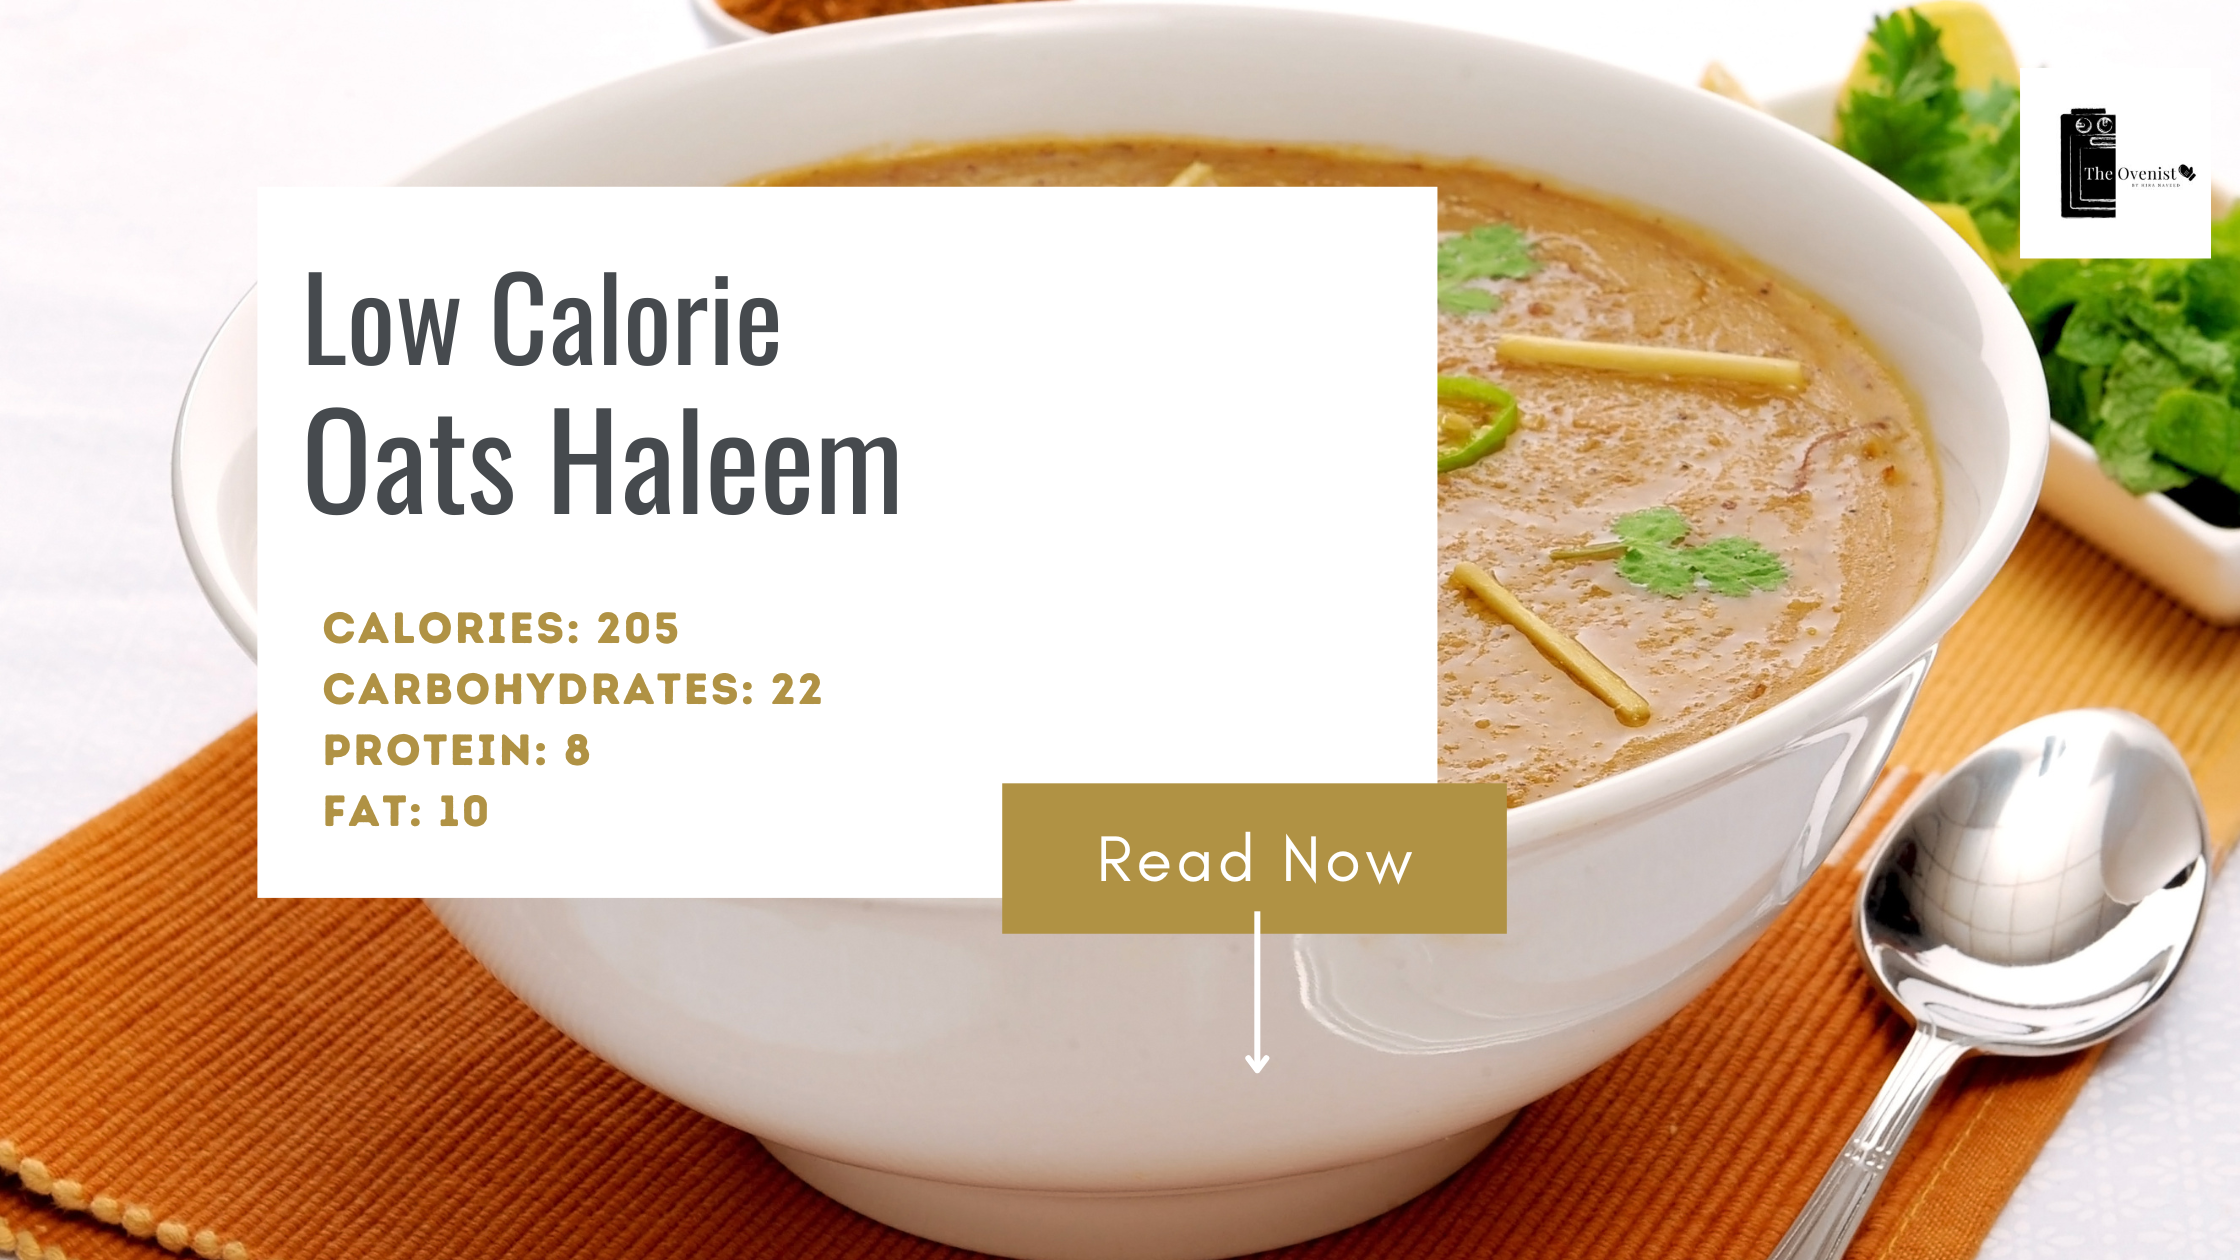 Low Calorie Oats Haleem